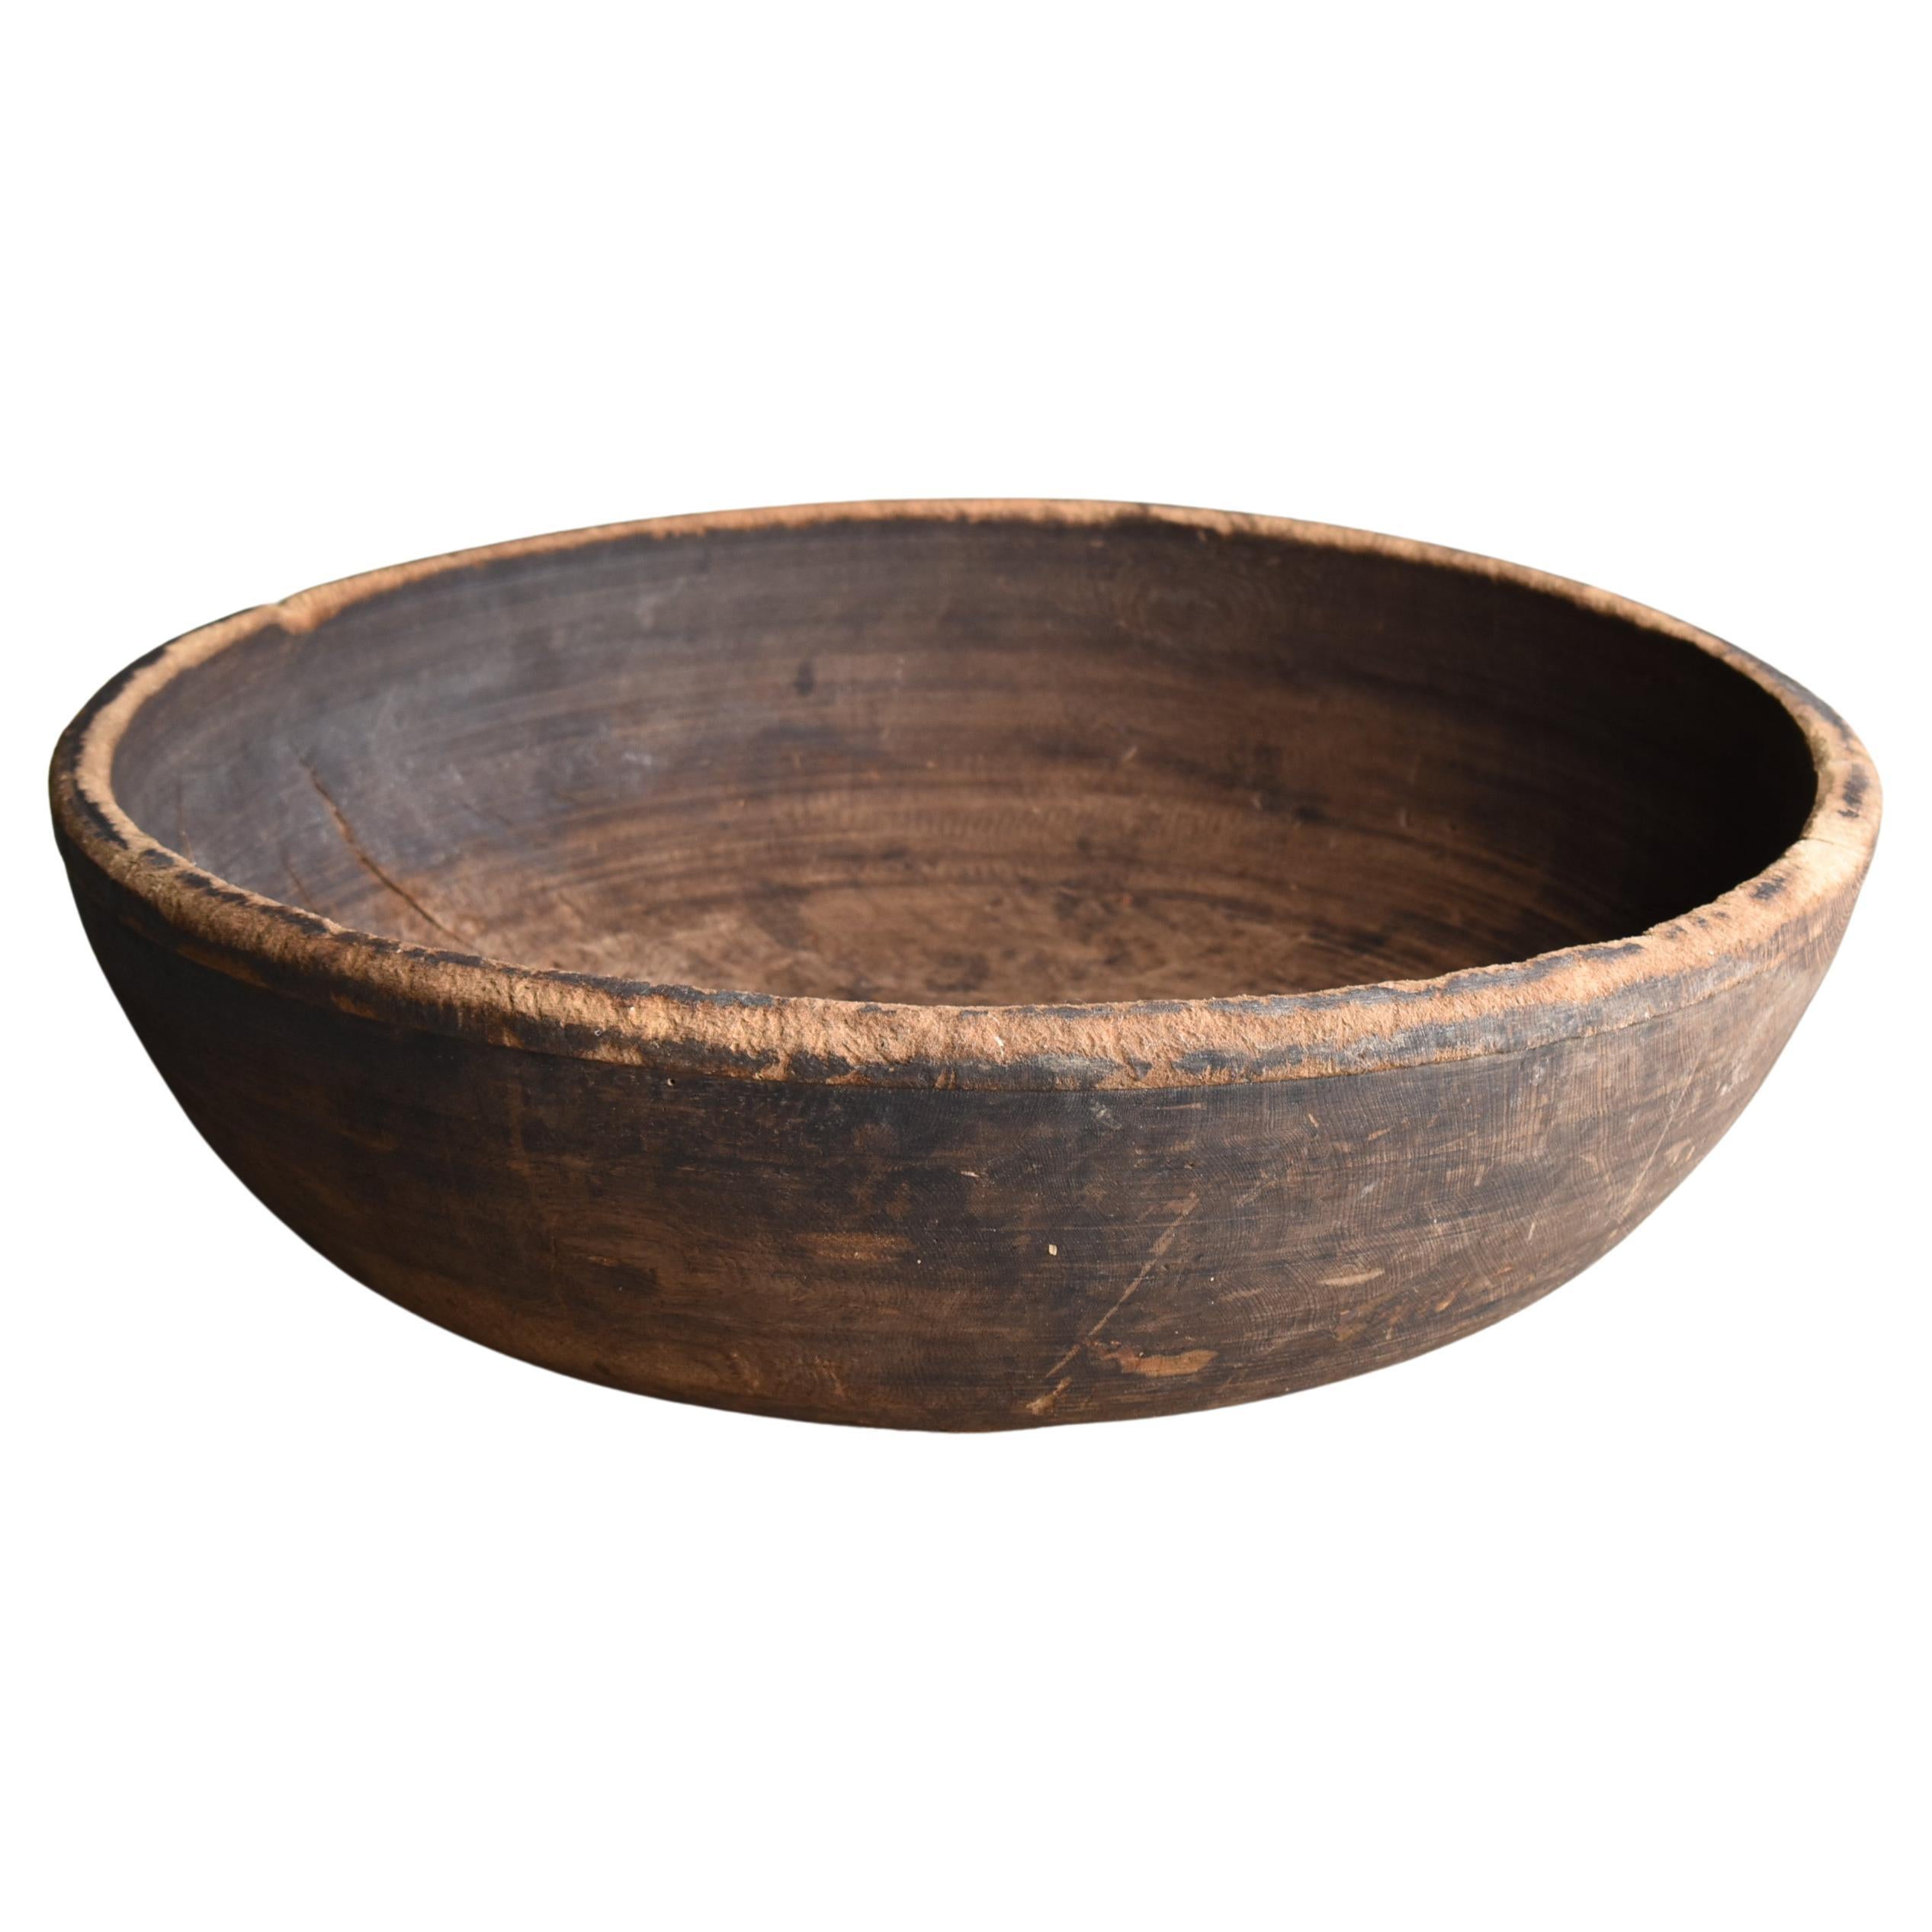 Japanese Antique Large Wooden Bowl 1860s-1900s/Mingei Wabisabi Primitive